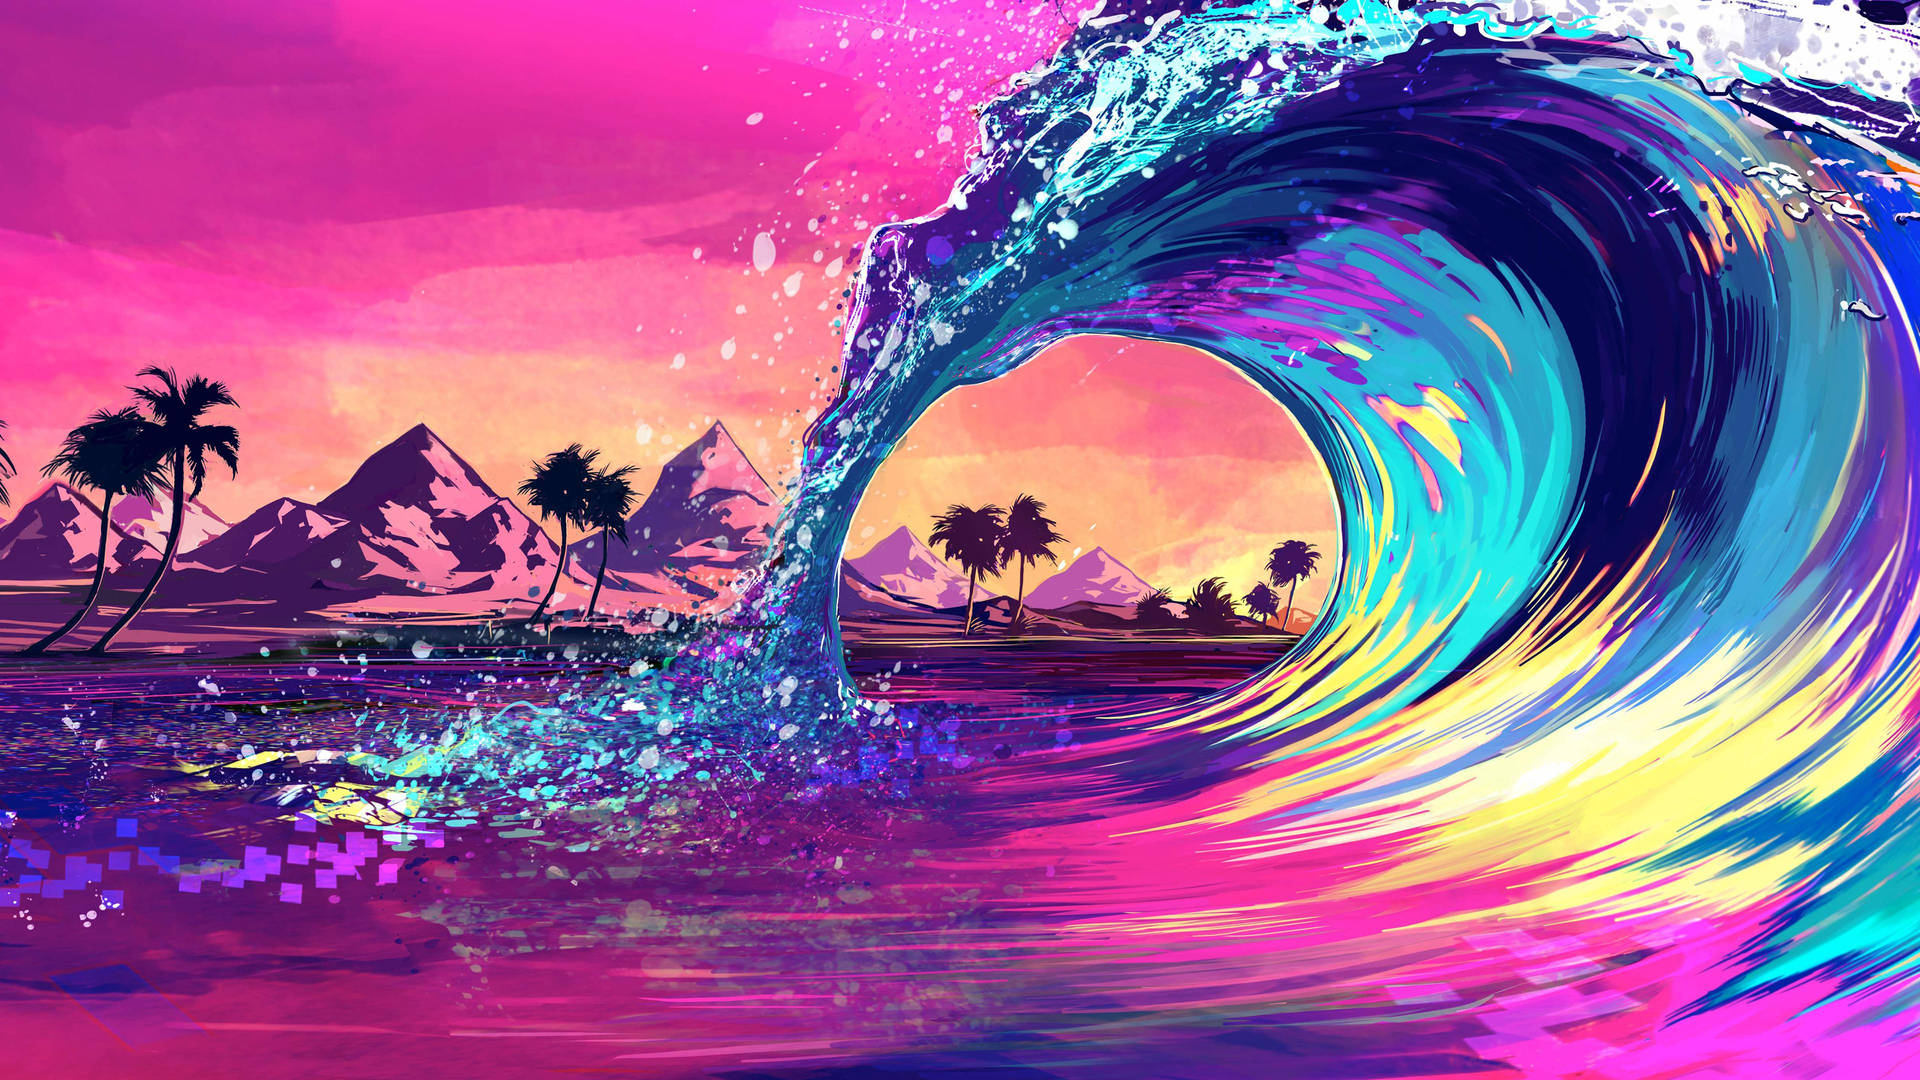 Ocean Waves Digital Art Background